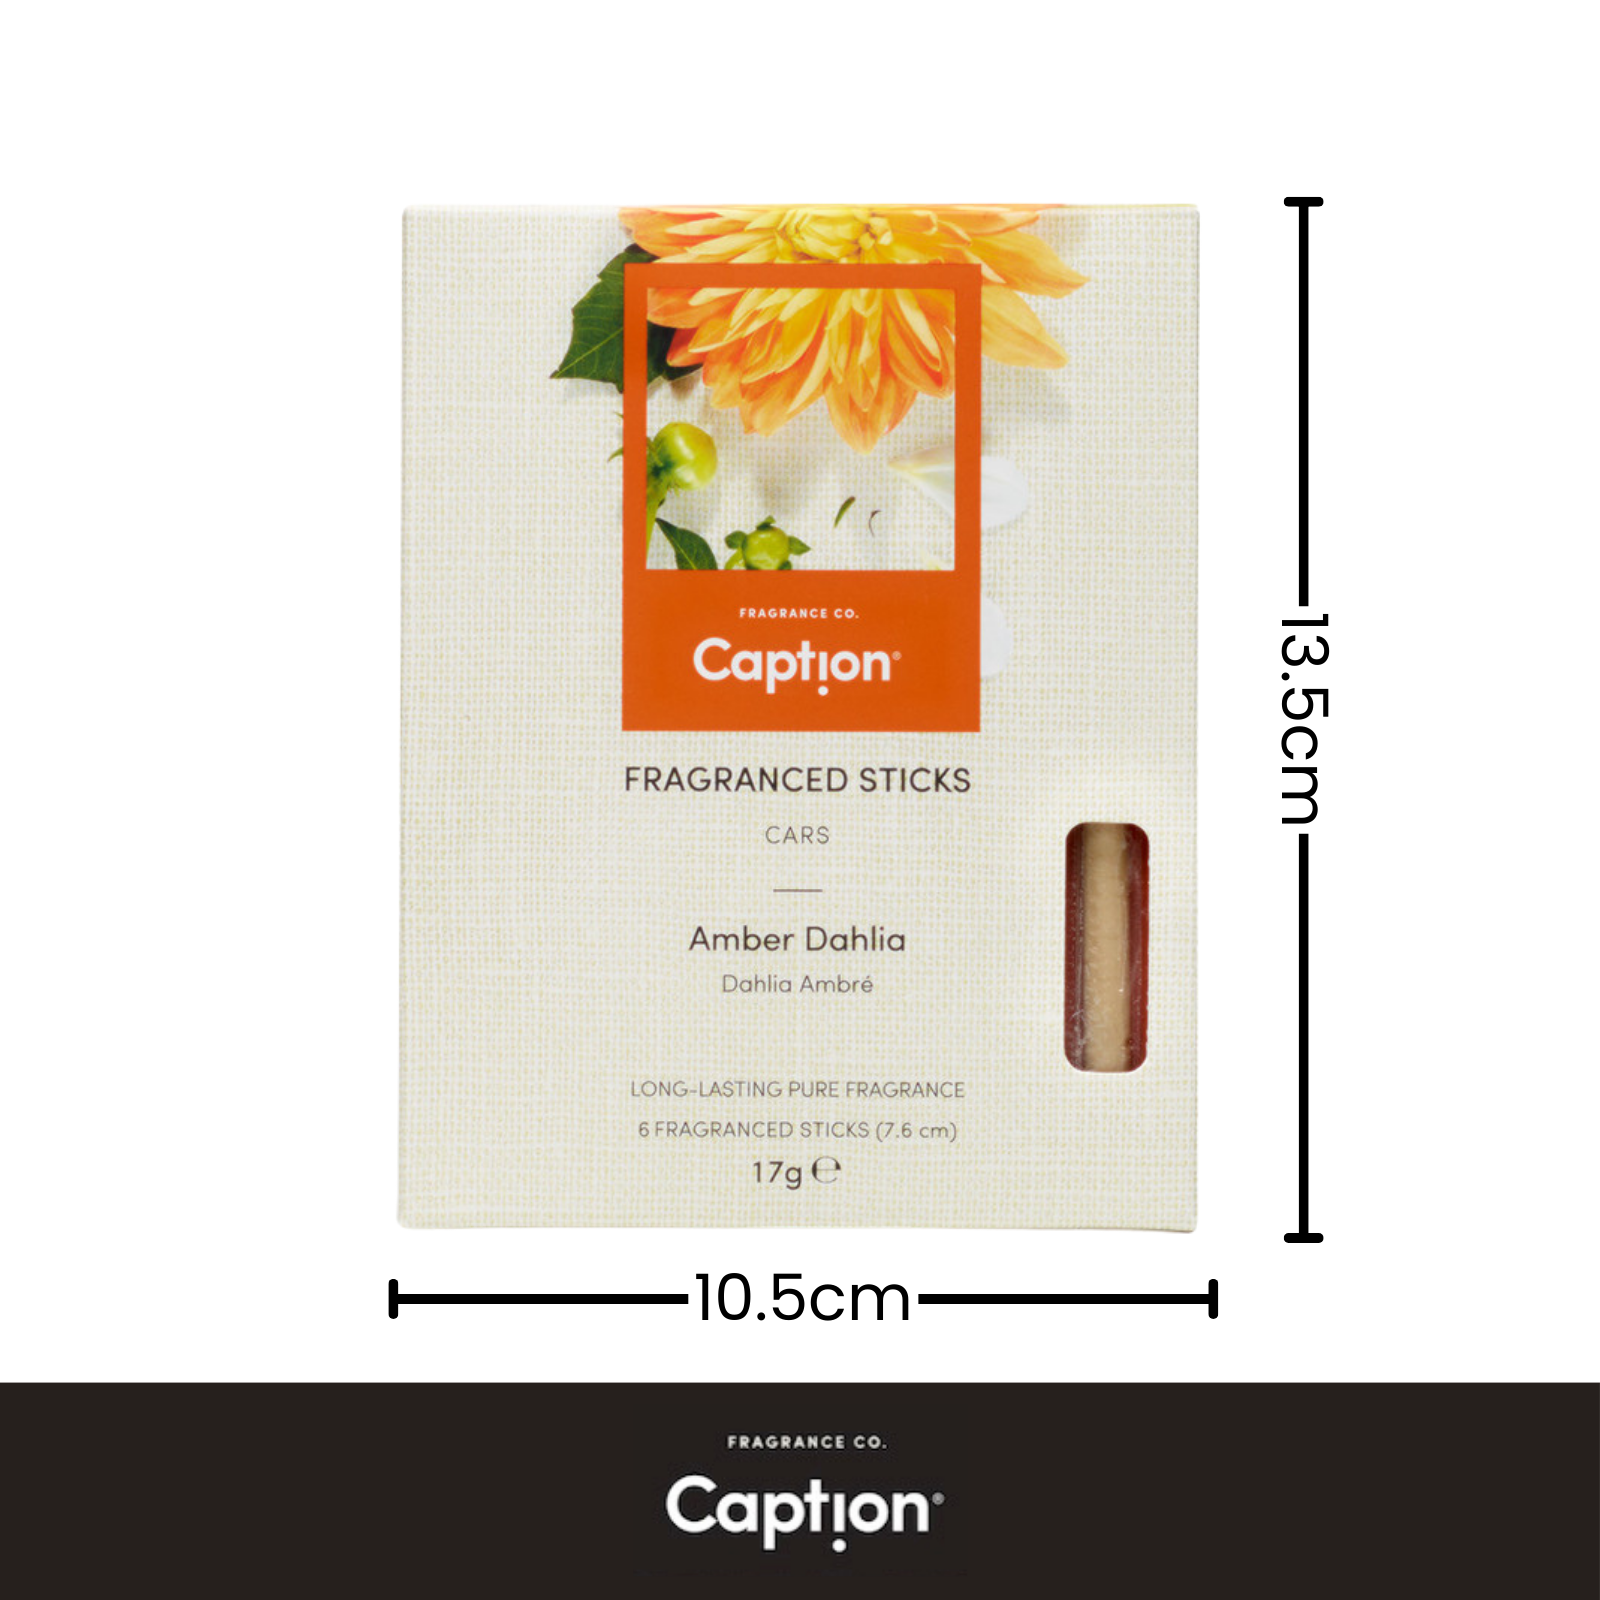 Caption Fragrance Sticks - Amber Dahlia (7.6cm)